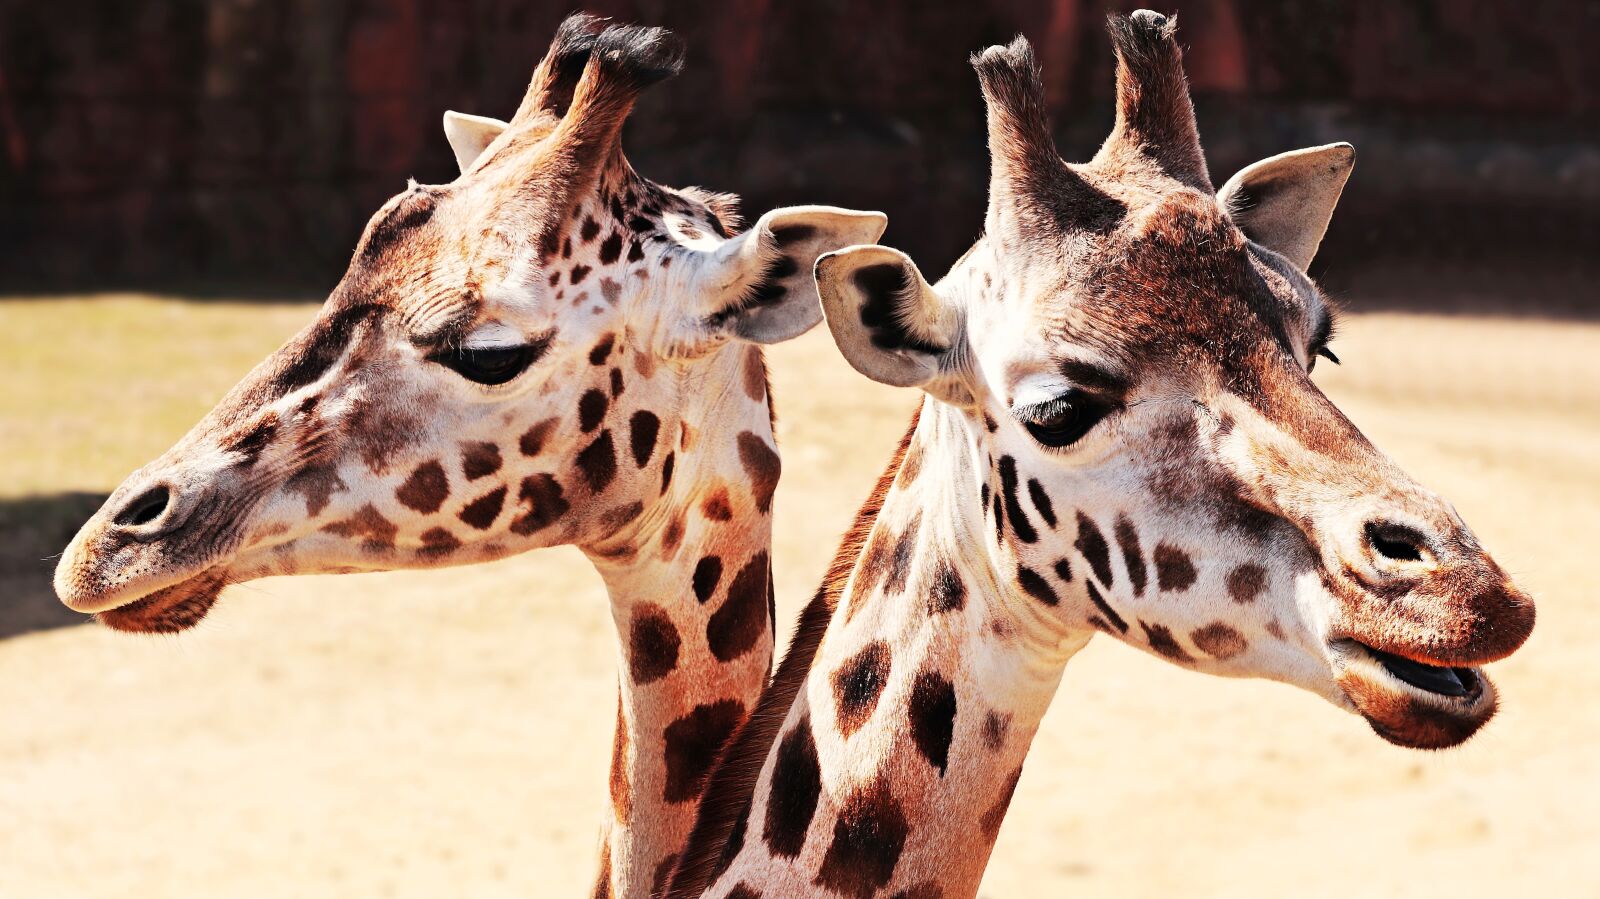 Canon EOS 80D sample photo. Giraffes, animal, mammal photography